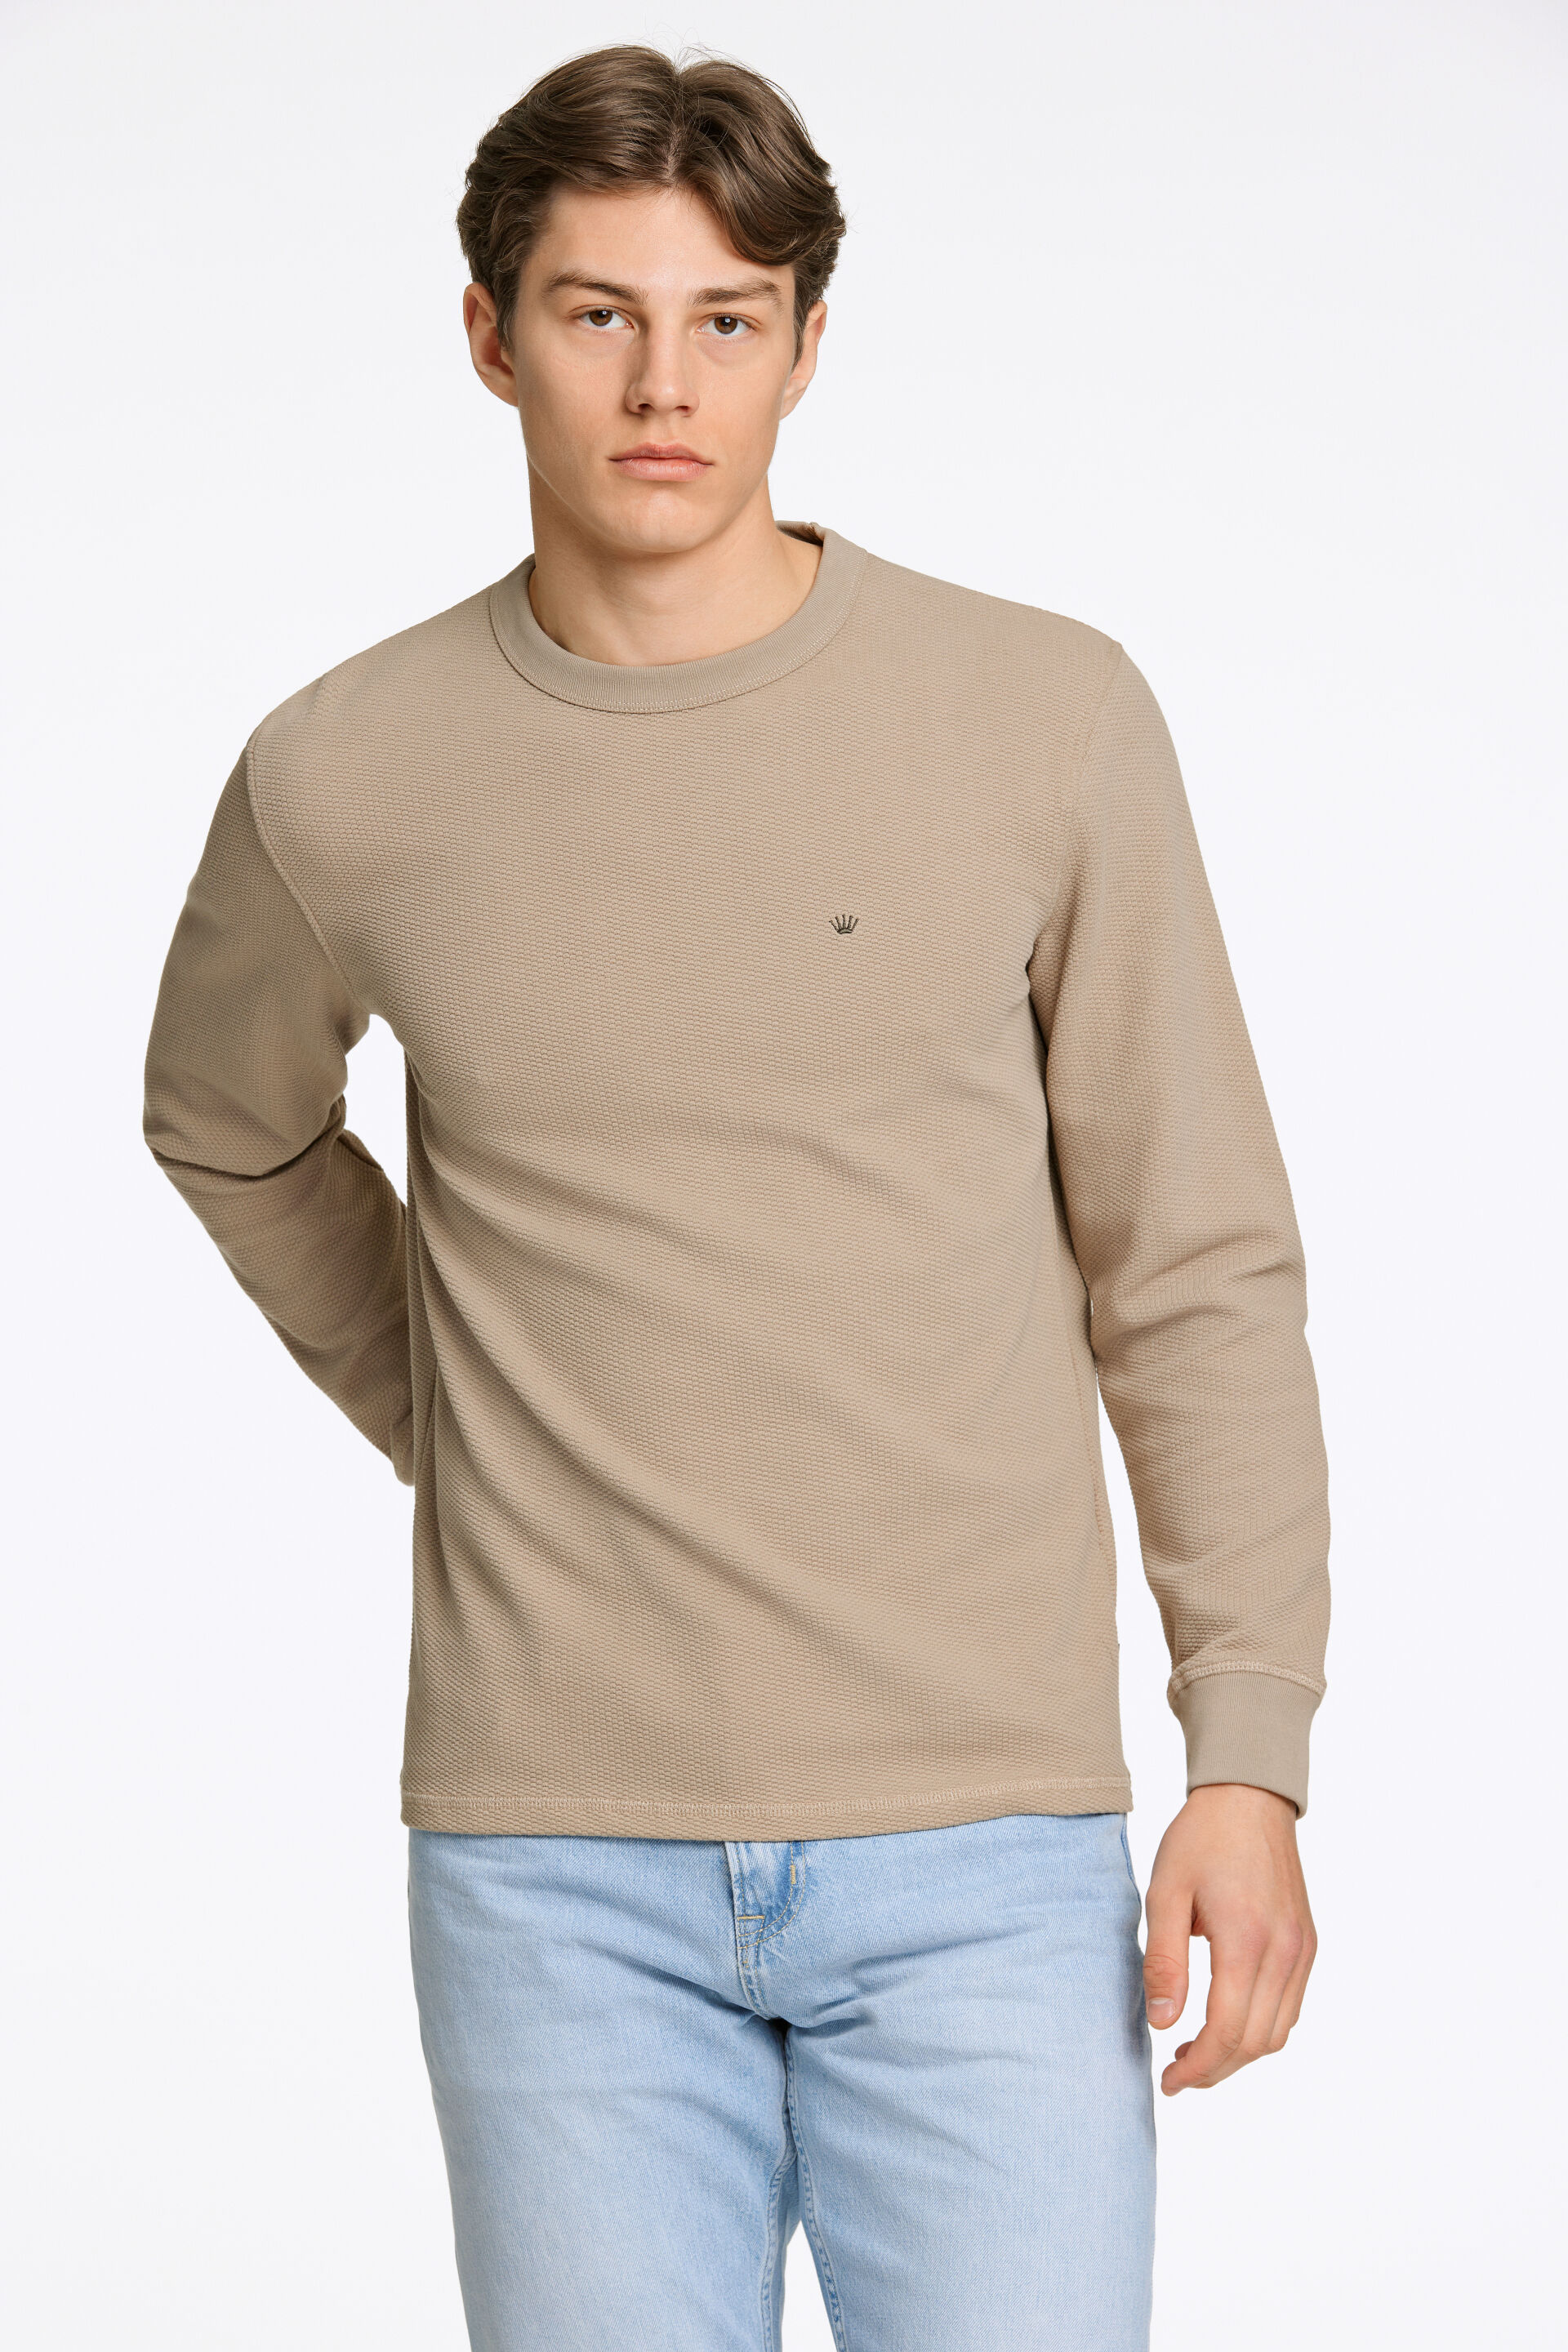 Junk de Luxe  Sweatshirt Sand 60-702019